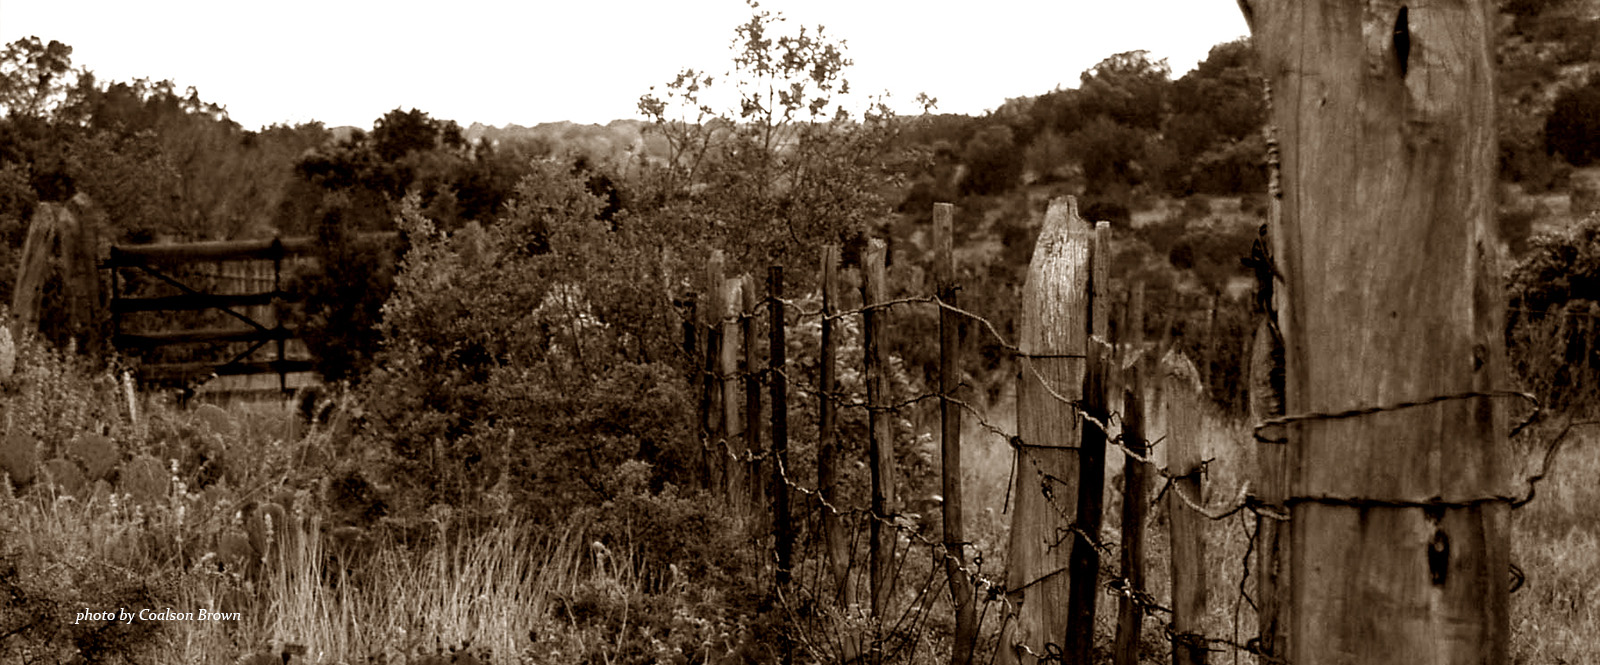 fence and foliage image